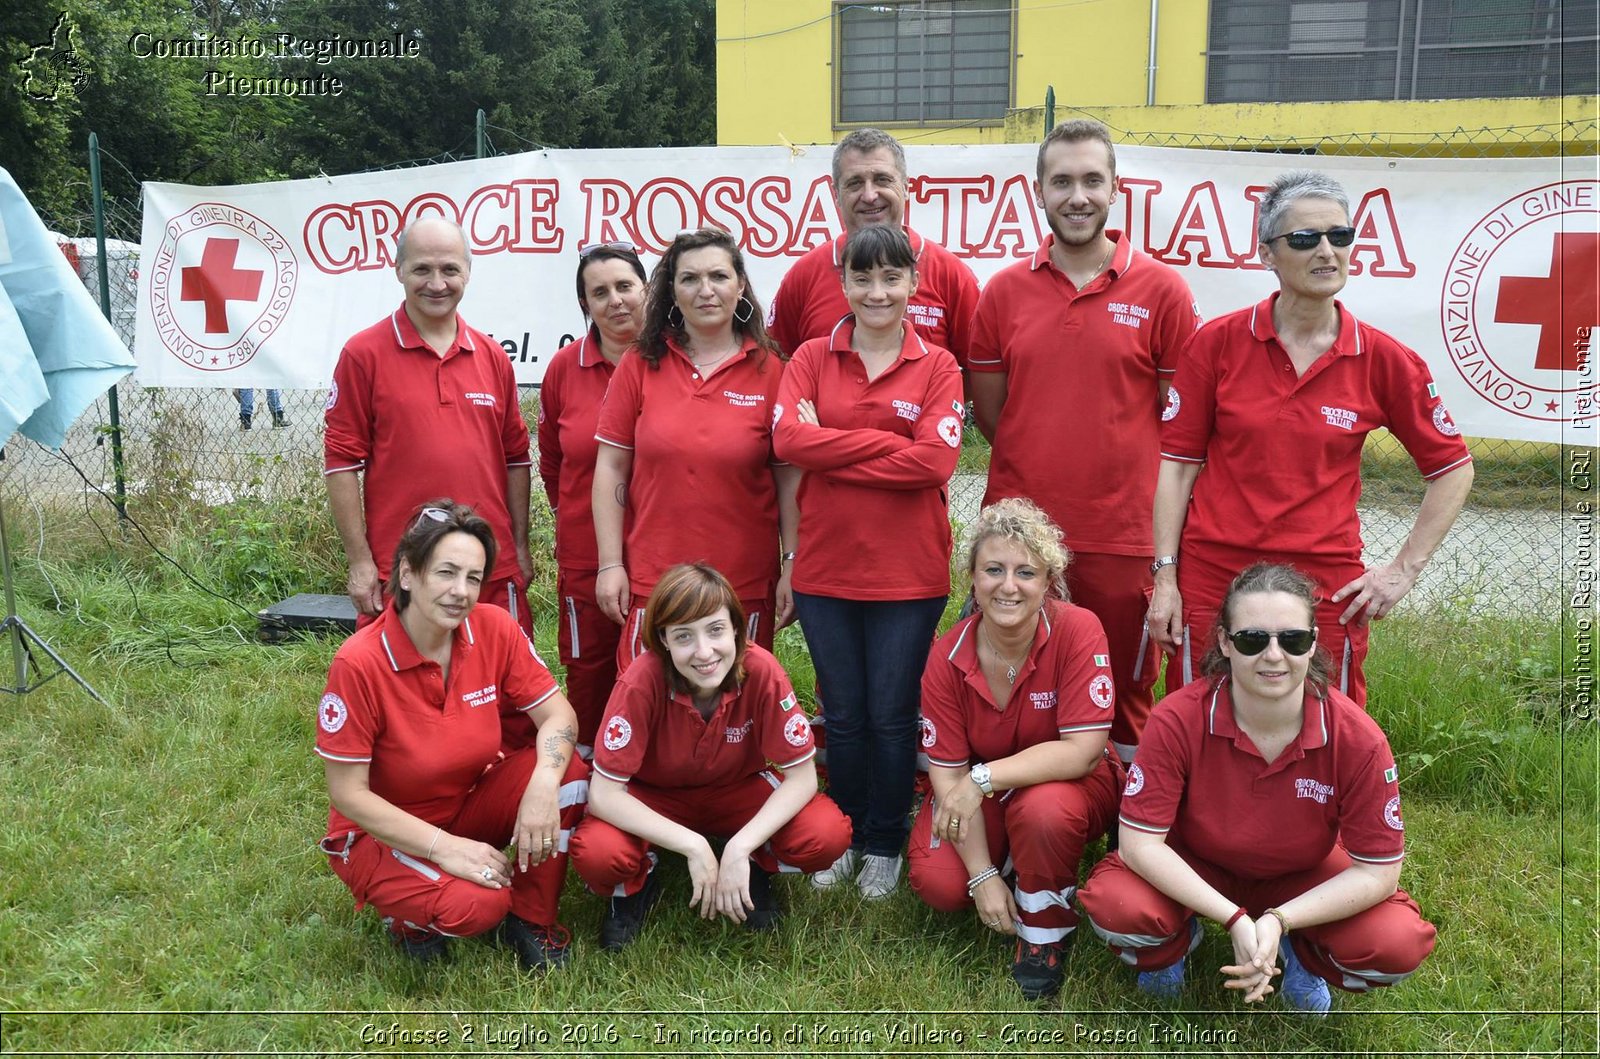 Cafasse 2 Luglio 2016 - In ricordo di Katia Vallero - Croce Rossa Italiana- Comitato Regionale del Piemonte